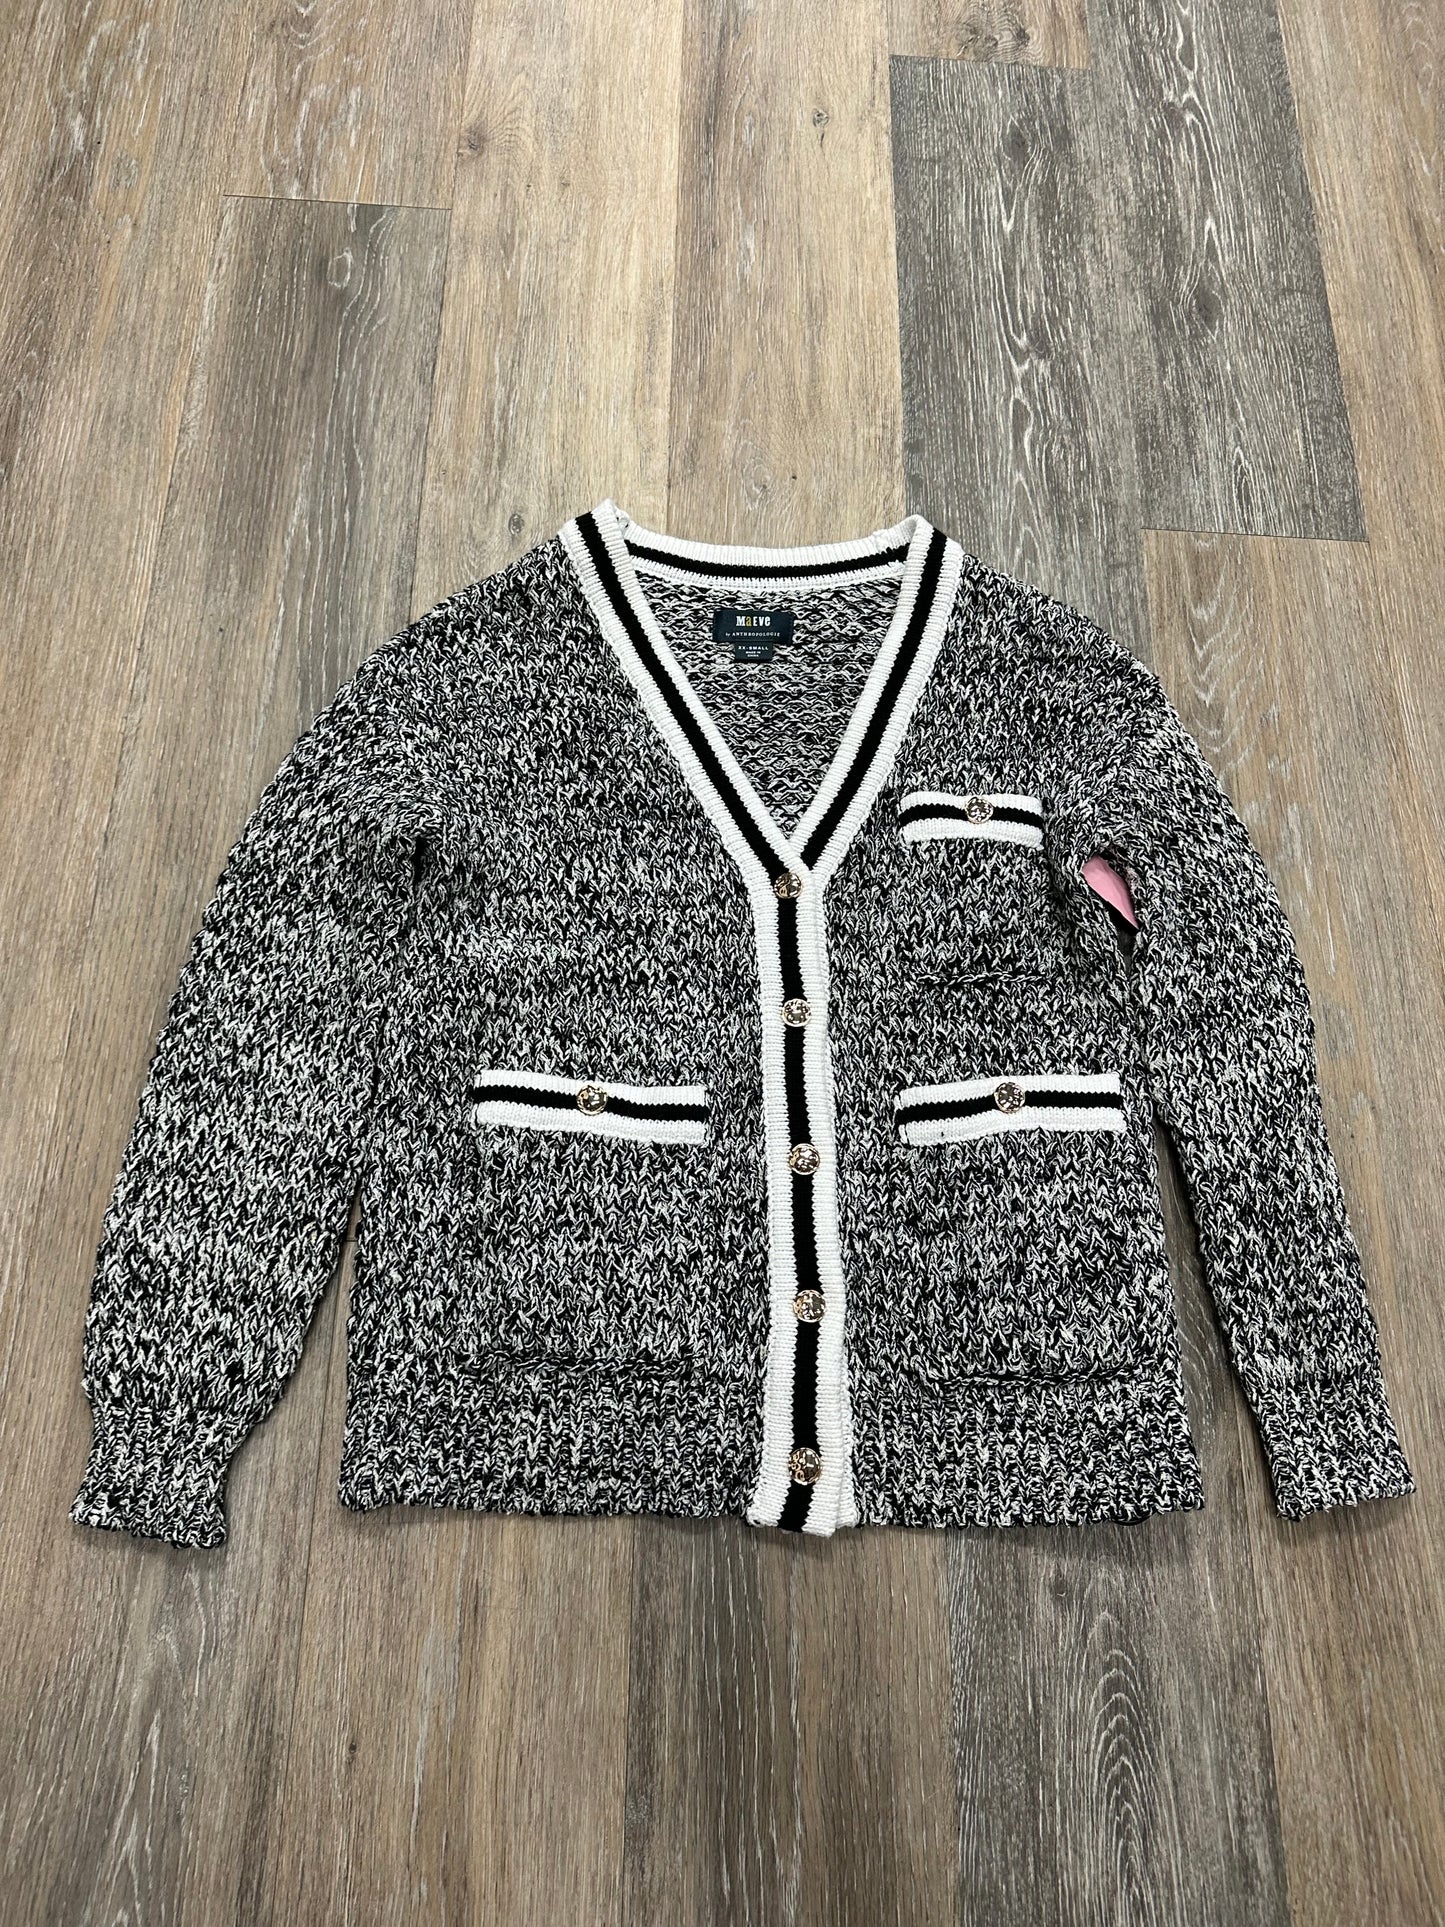 Sweater Cardigan By Maeve  Size: Xxs